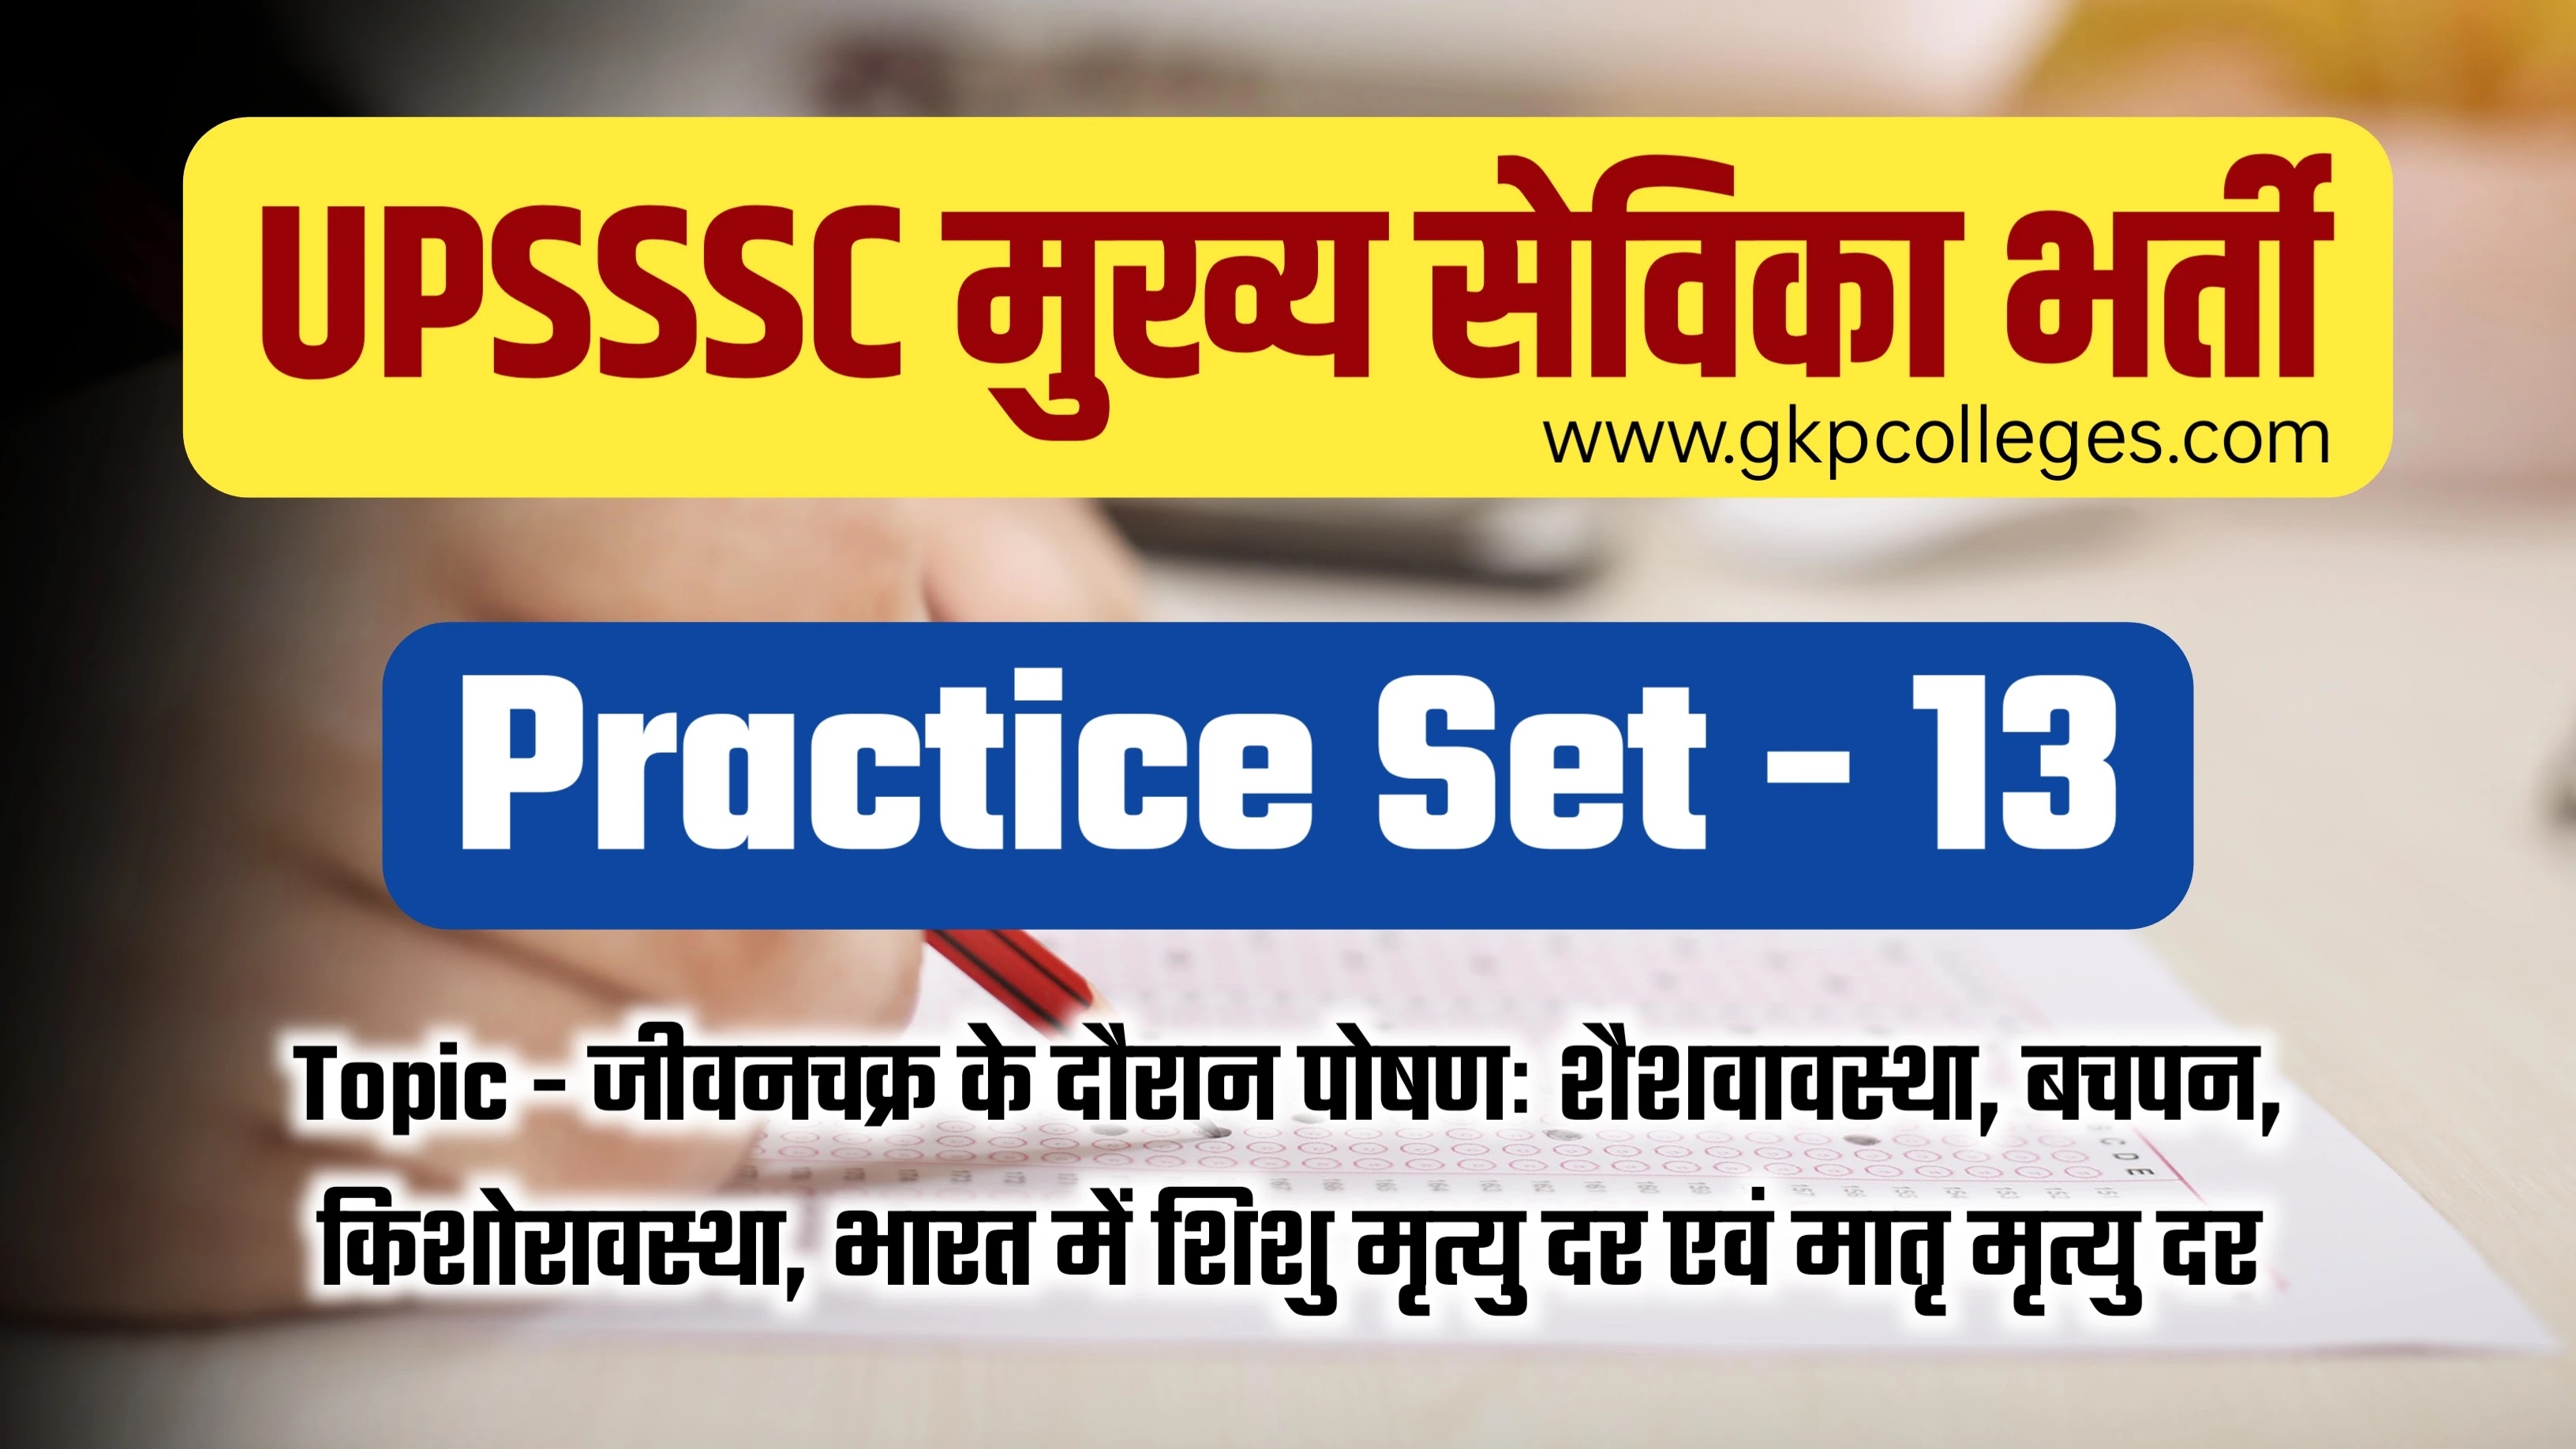 Practice Set - 13, UPSSSC Mukhya Sevika Recruitment 2022, जीवनचक्र के दौरान पोषणः शैशवावस्था, बचपन, किशोरावस्था, भारत में शिशु मृत्यु दर एवं मातृ मृत्यु दर